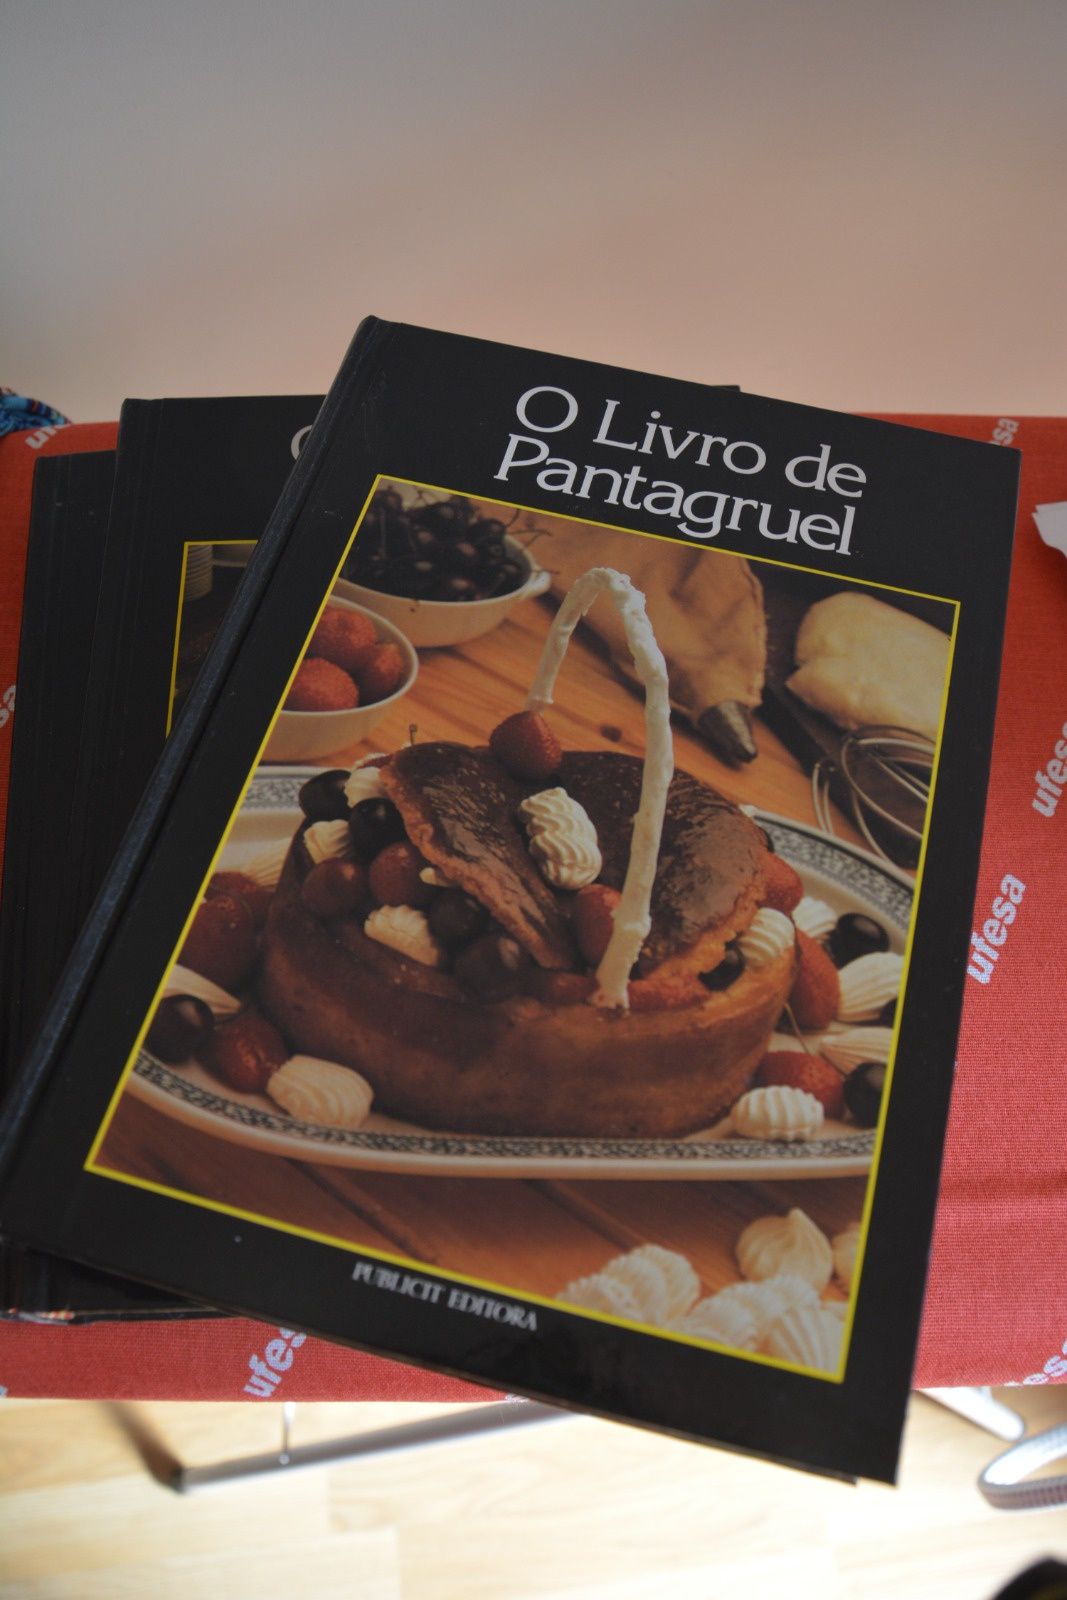 Livros de culinária Pantagruel 3 volumes